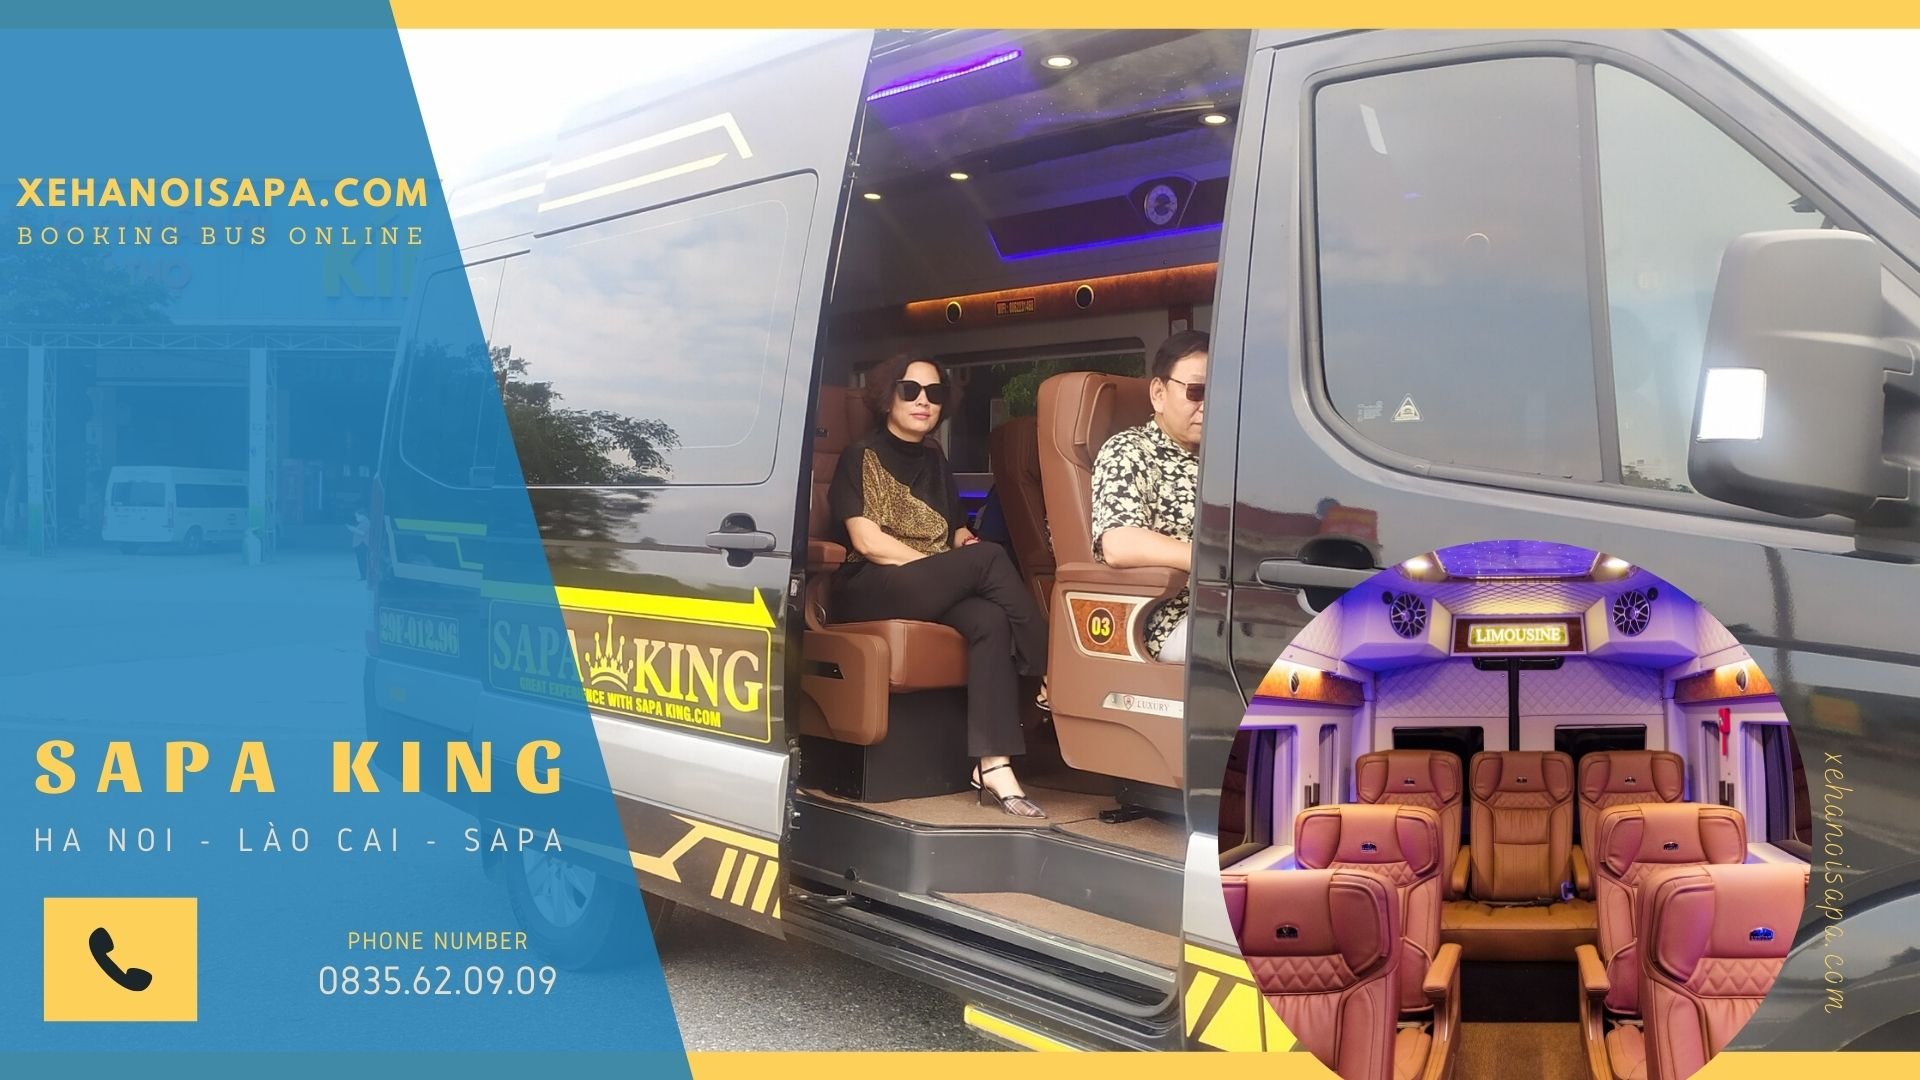 Sapa king Limousine - Nội & Ngoại thất xe sang trọng, tiện nghi và hiện đại